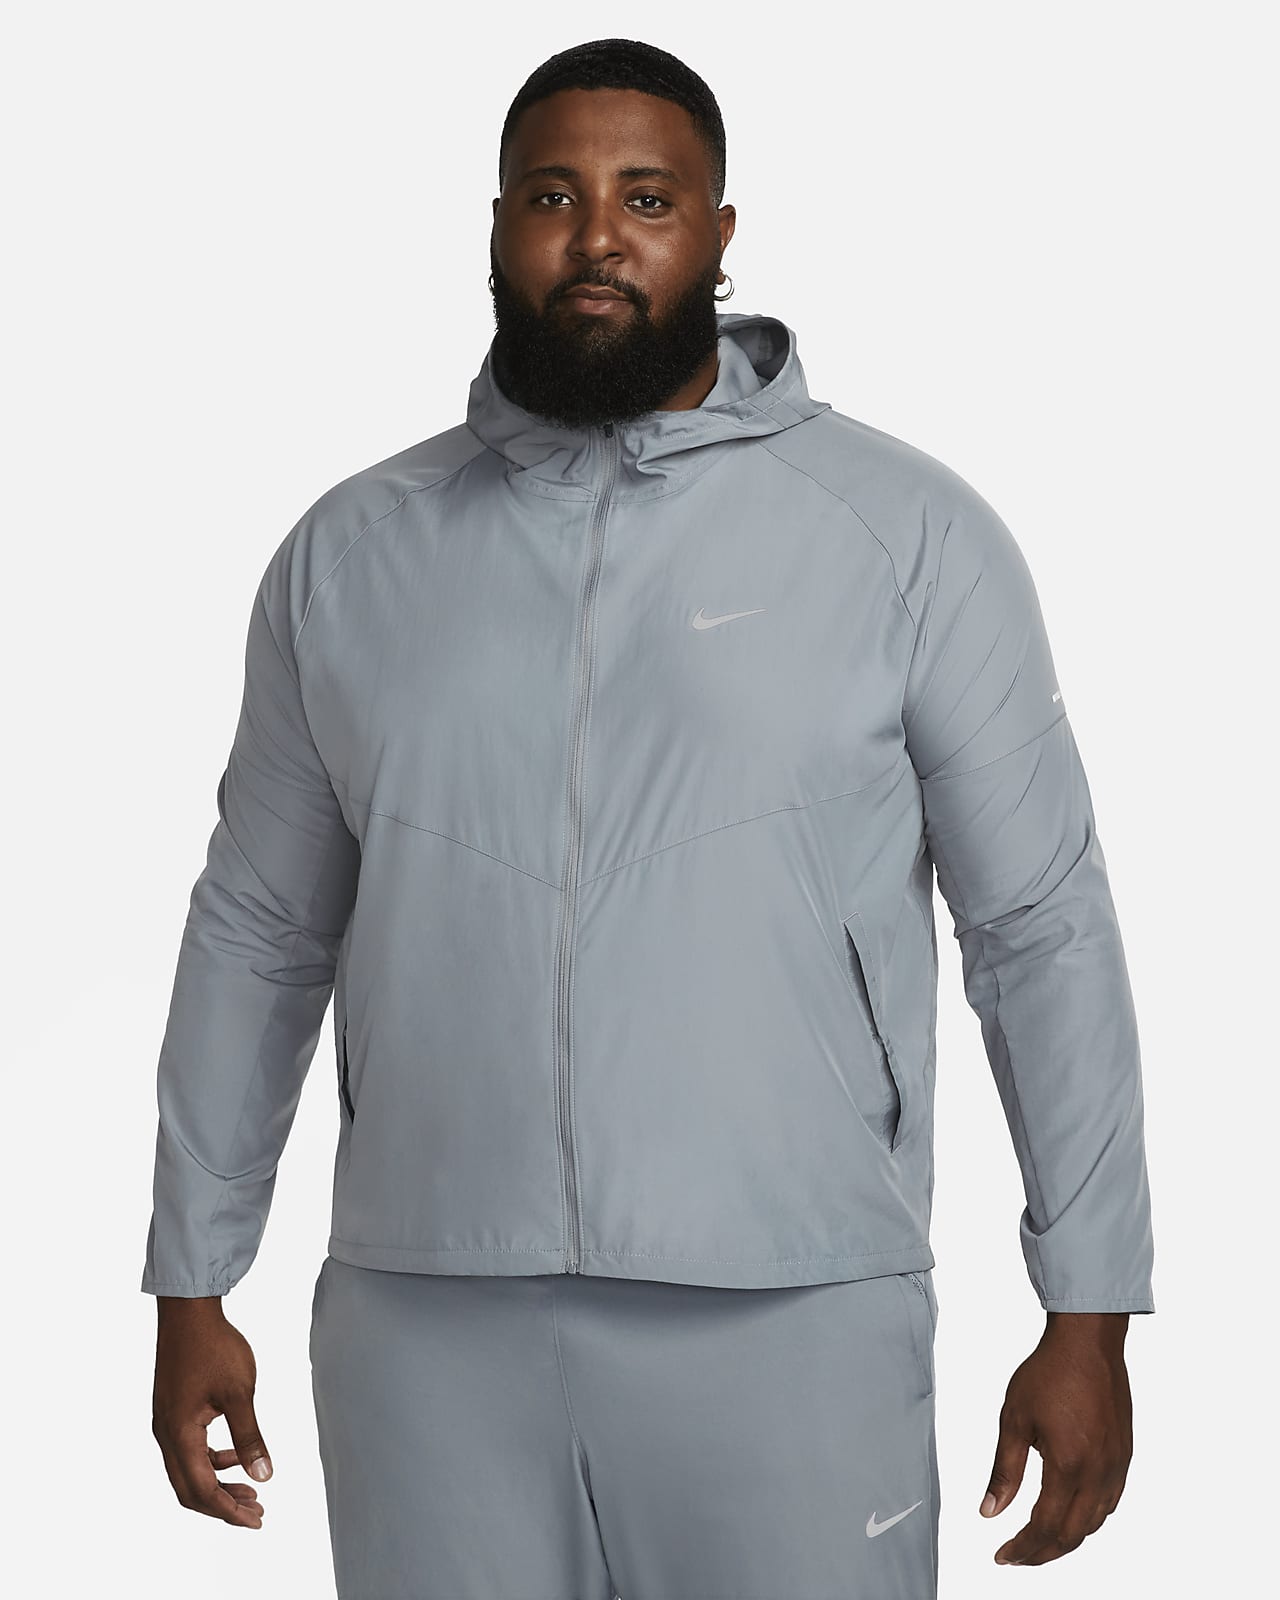 Veste à capuche Nike Rpl Miler homme - Gris - DD4746-084